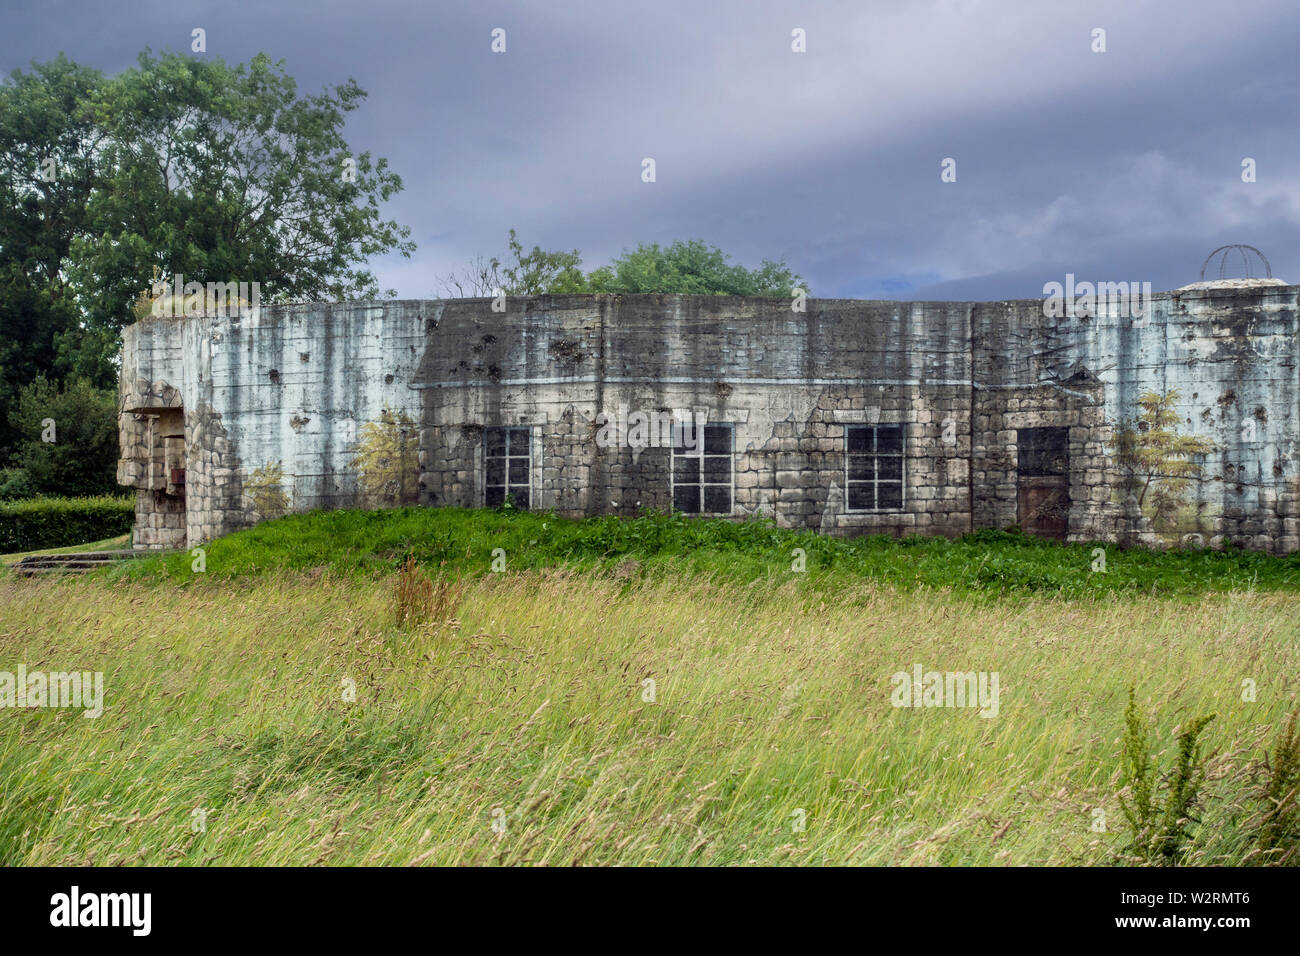 Tarnanstrich, zerstörten Gebäude auf der Rückseite des Gun casemate/Artillerie Bunker des Zweiten Weltkriegs Batterie d'Azeville Batterie, Normandie, Frankreich Stockfoto